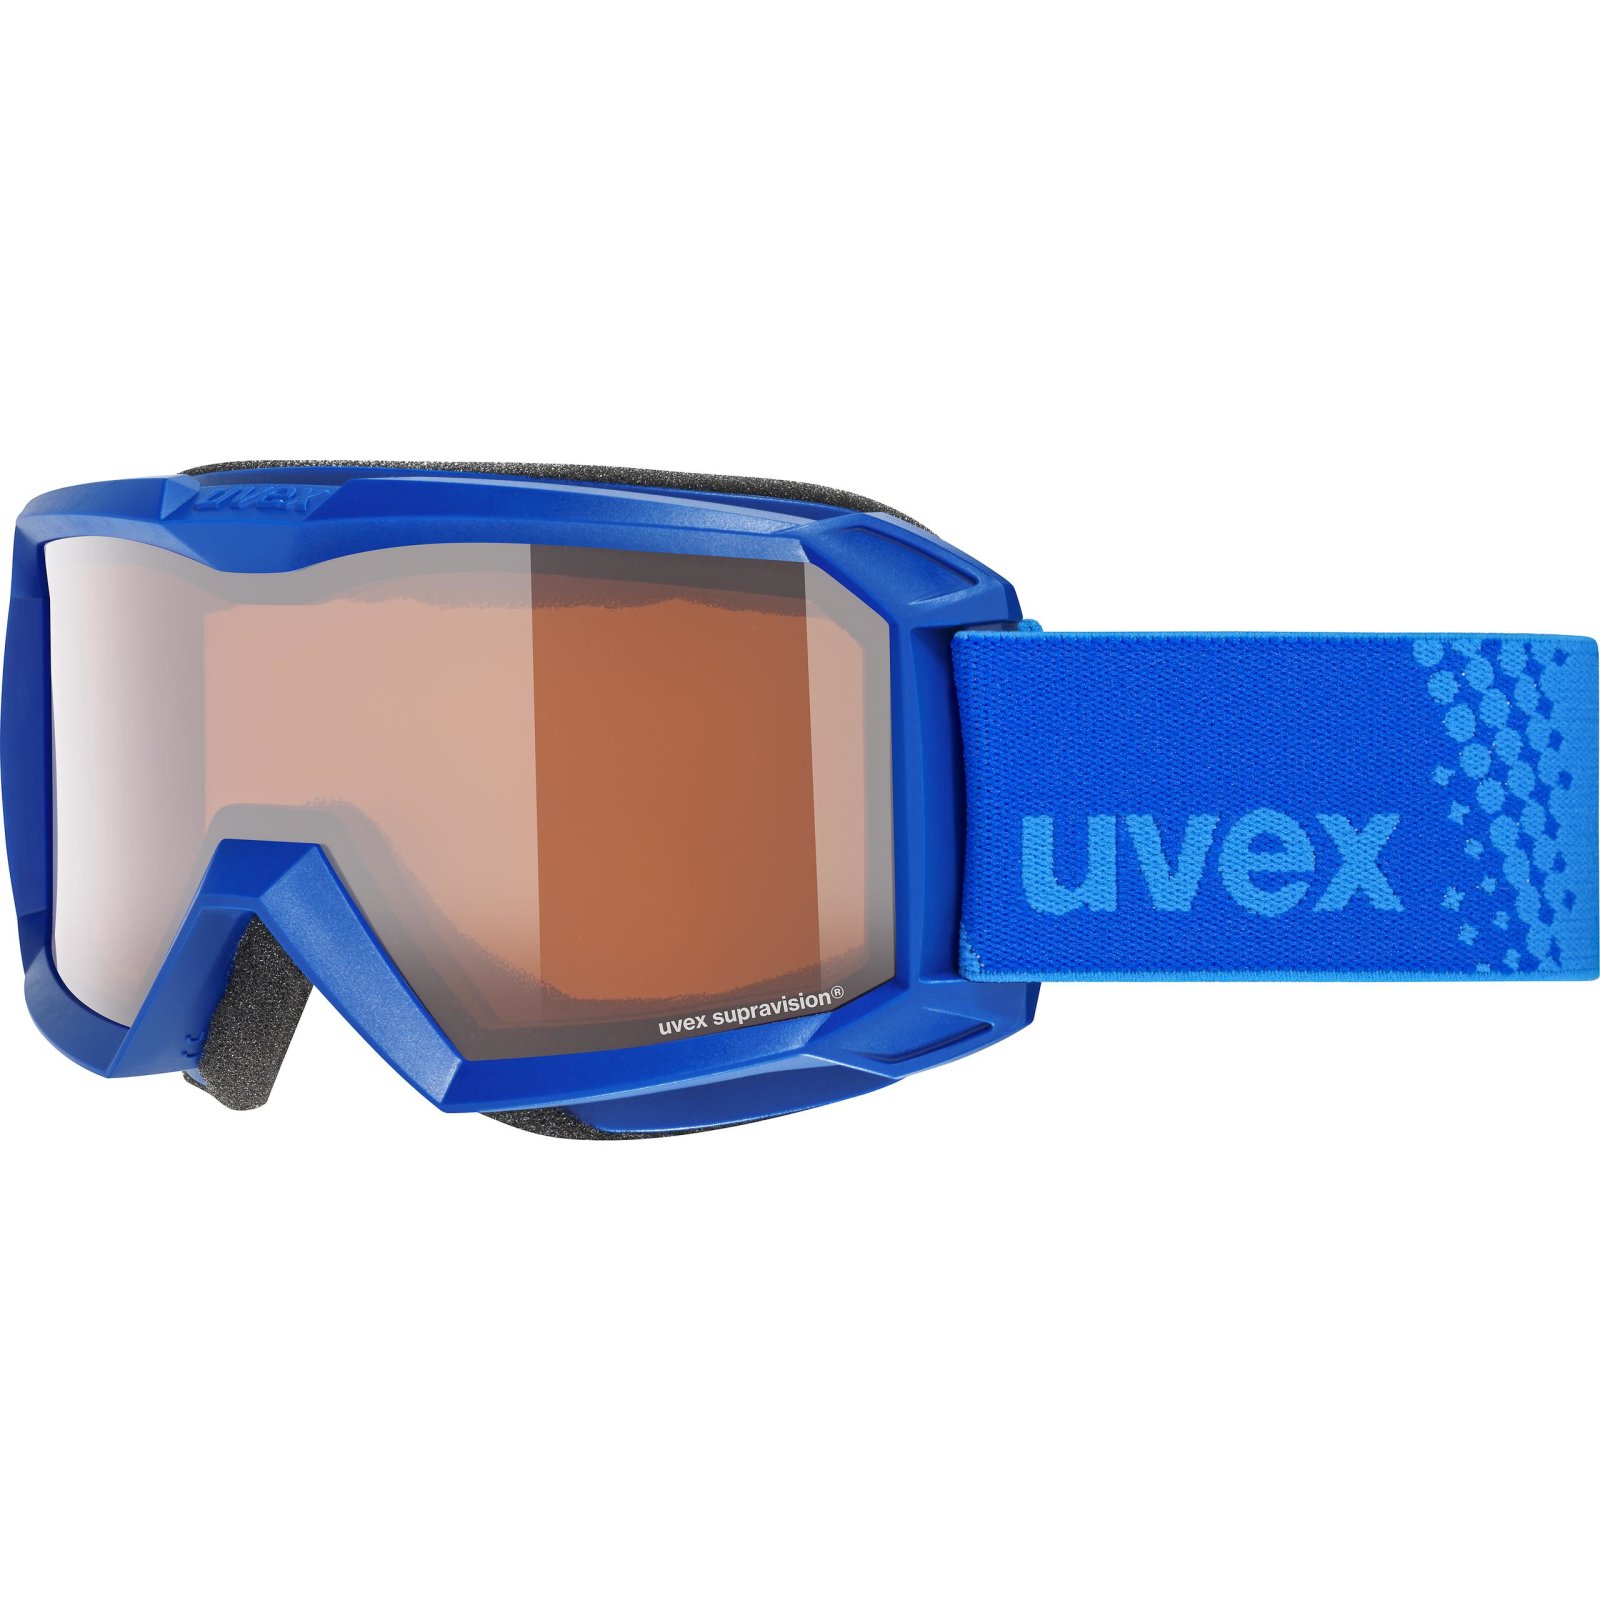 Detské lyžiarske okuliare UVEX flizz LG 20/21